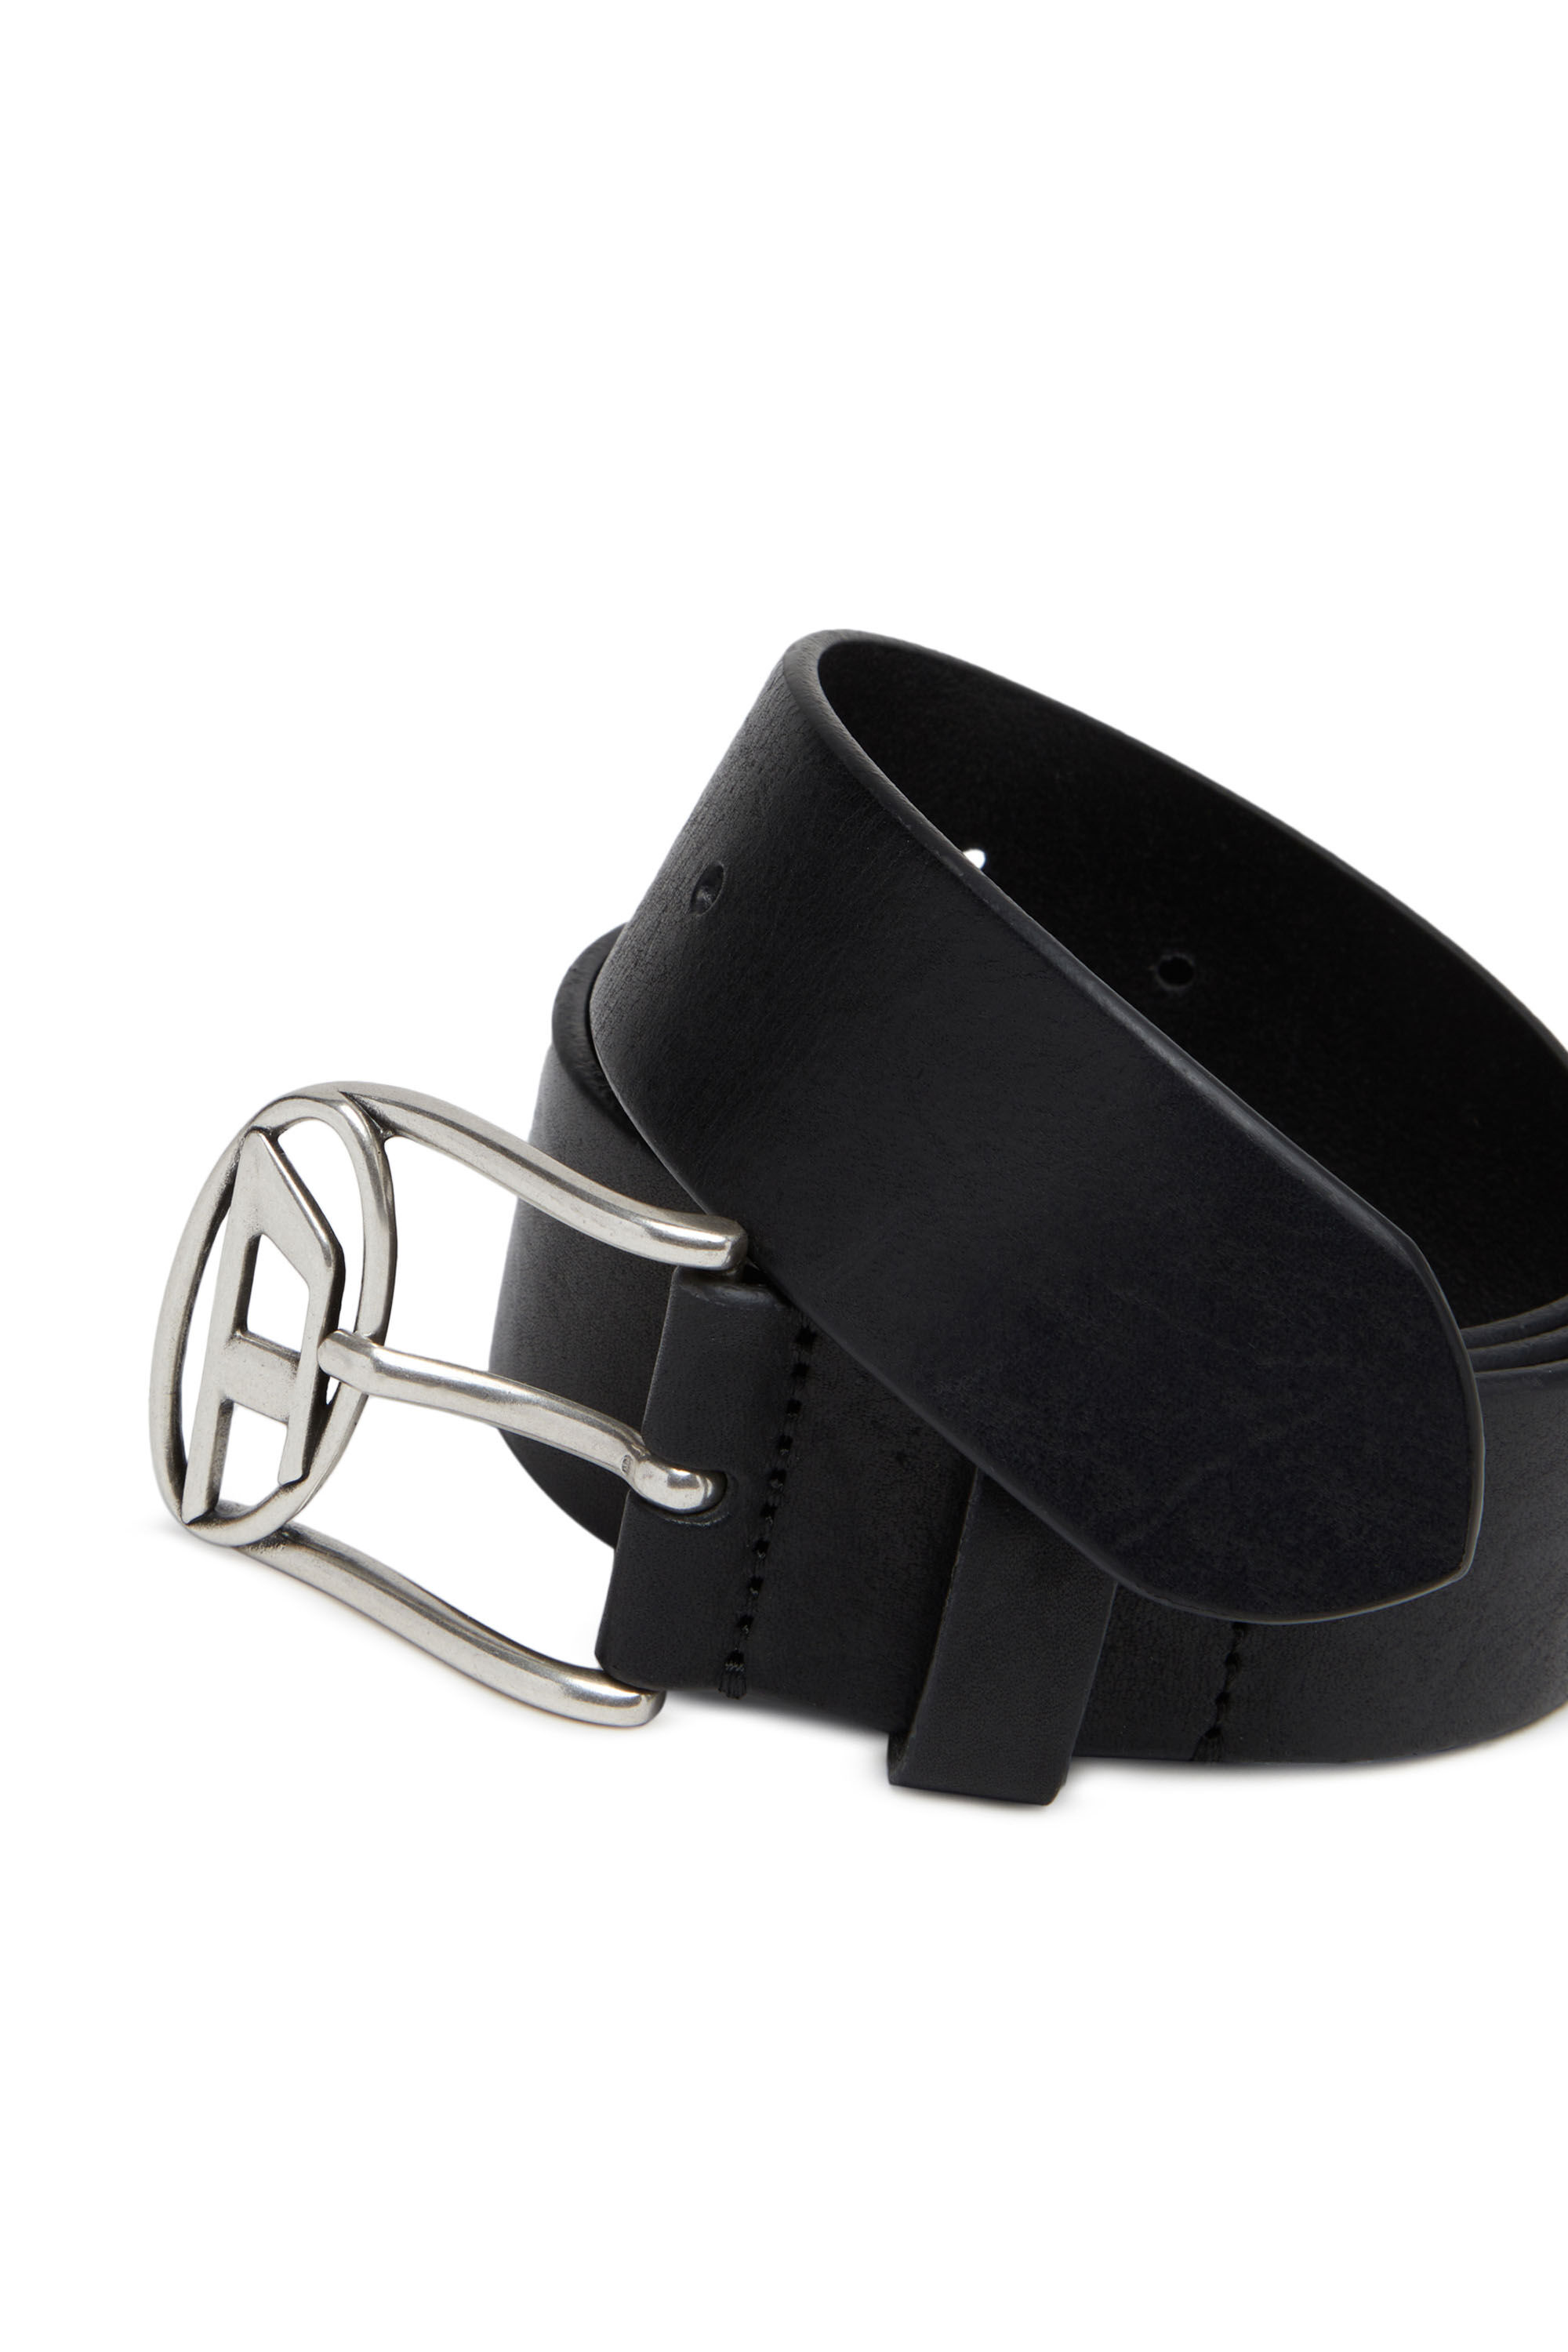 Women's Belts - Skinny, Wide, O Ring & Reversible Belts - Express